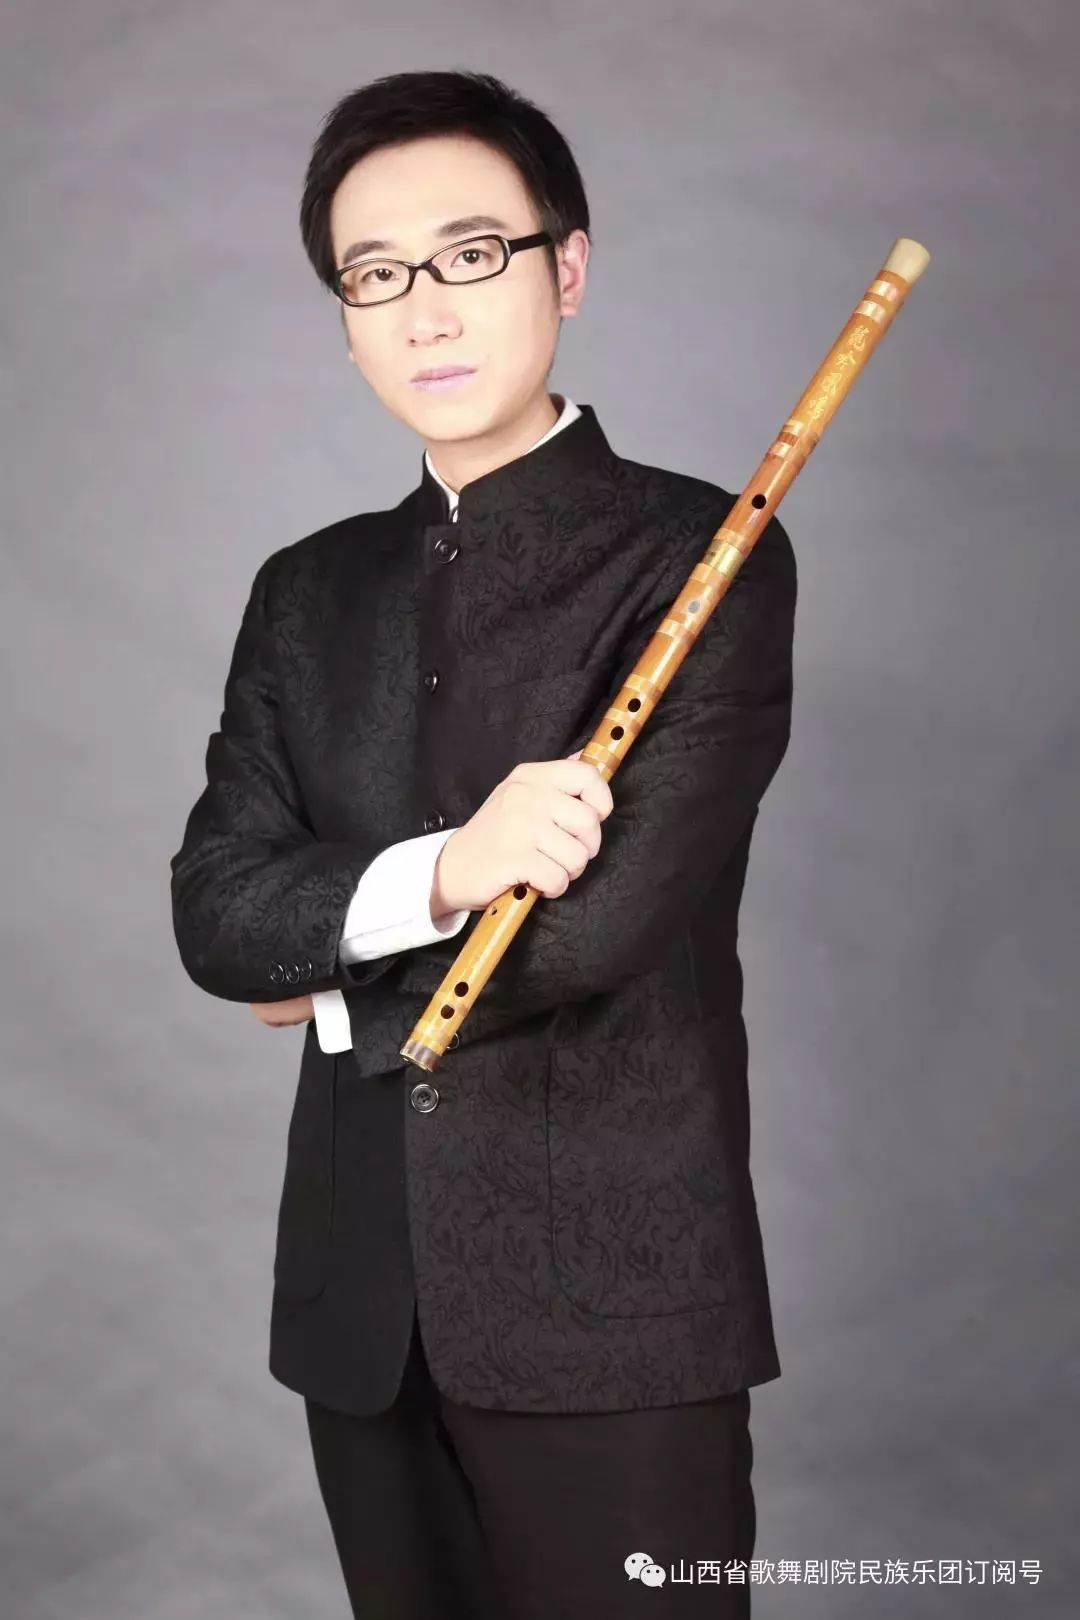 我院二胡演奏家王颖及校友张辉将联袂呈献风华国乐民族管弦乐音乐会